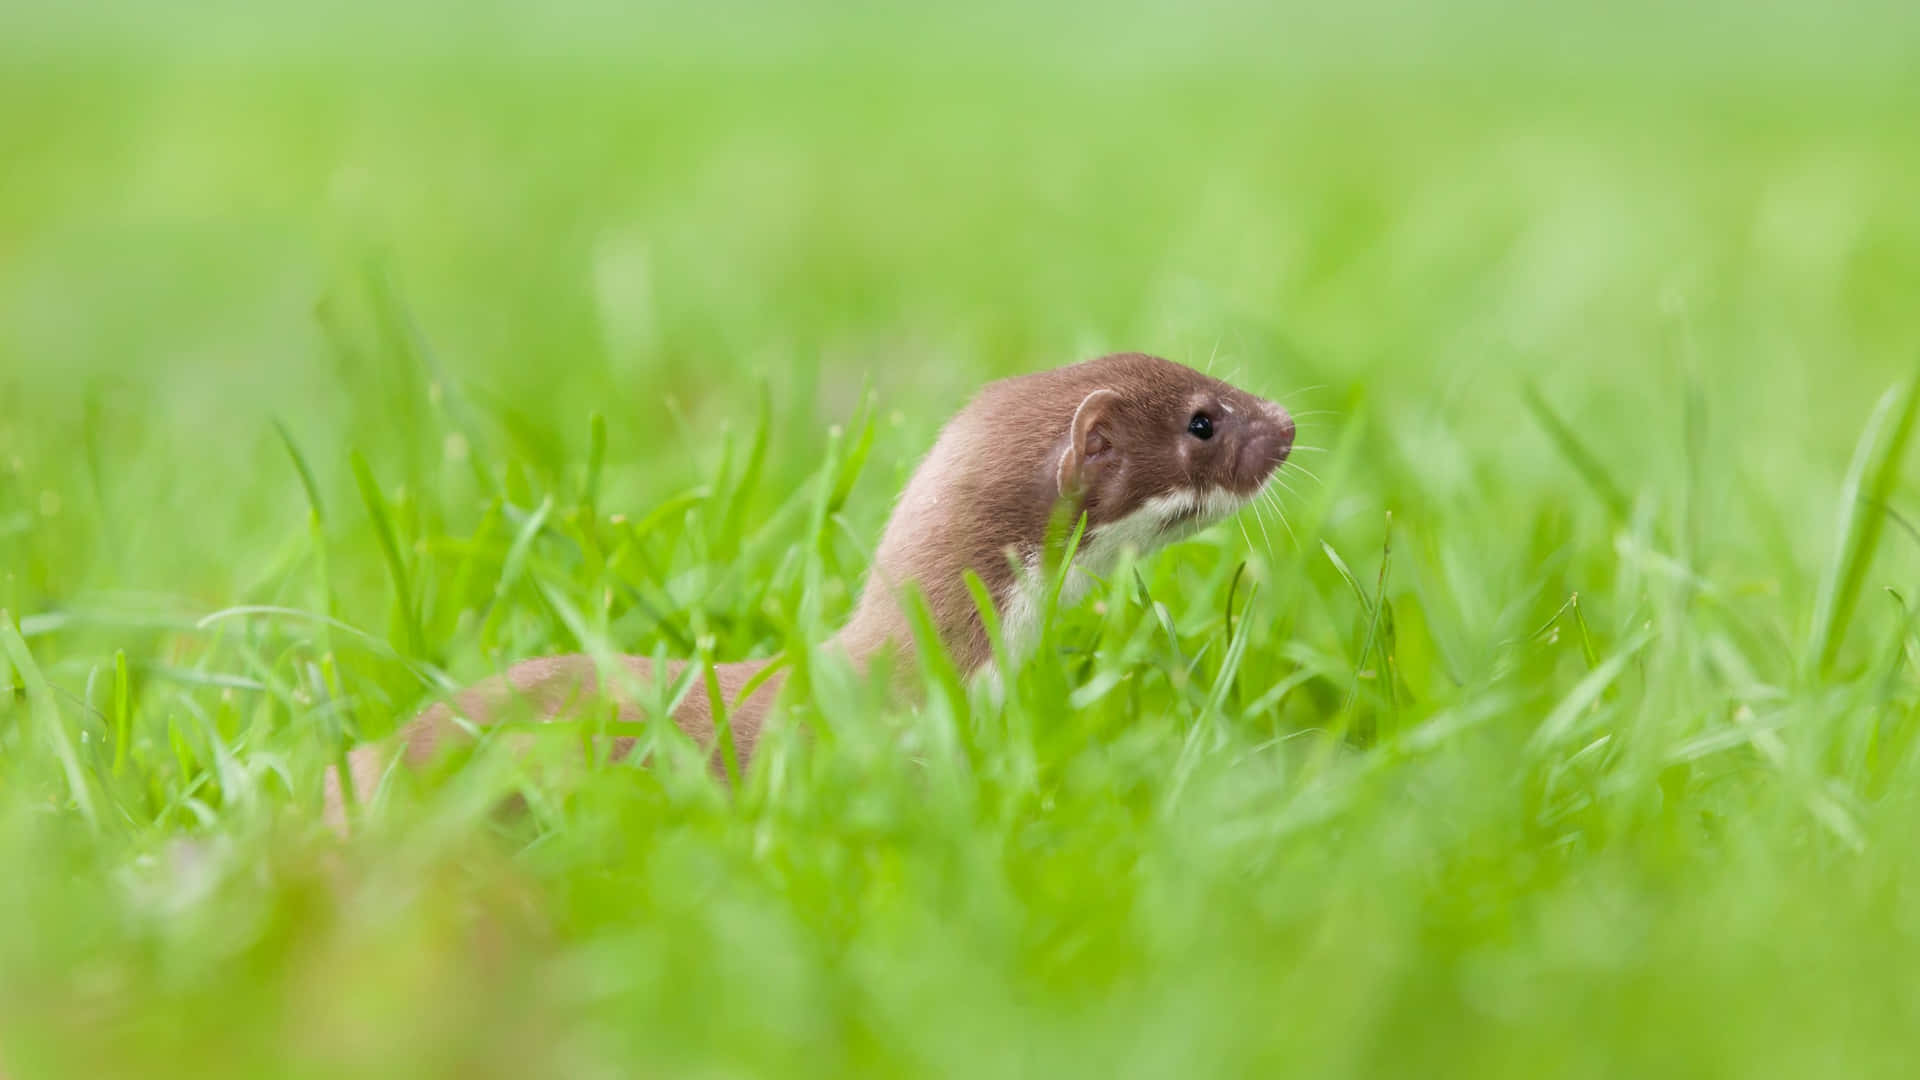 Weasel Peeking Through Grass.jpg Wallpaper